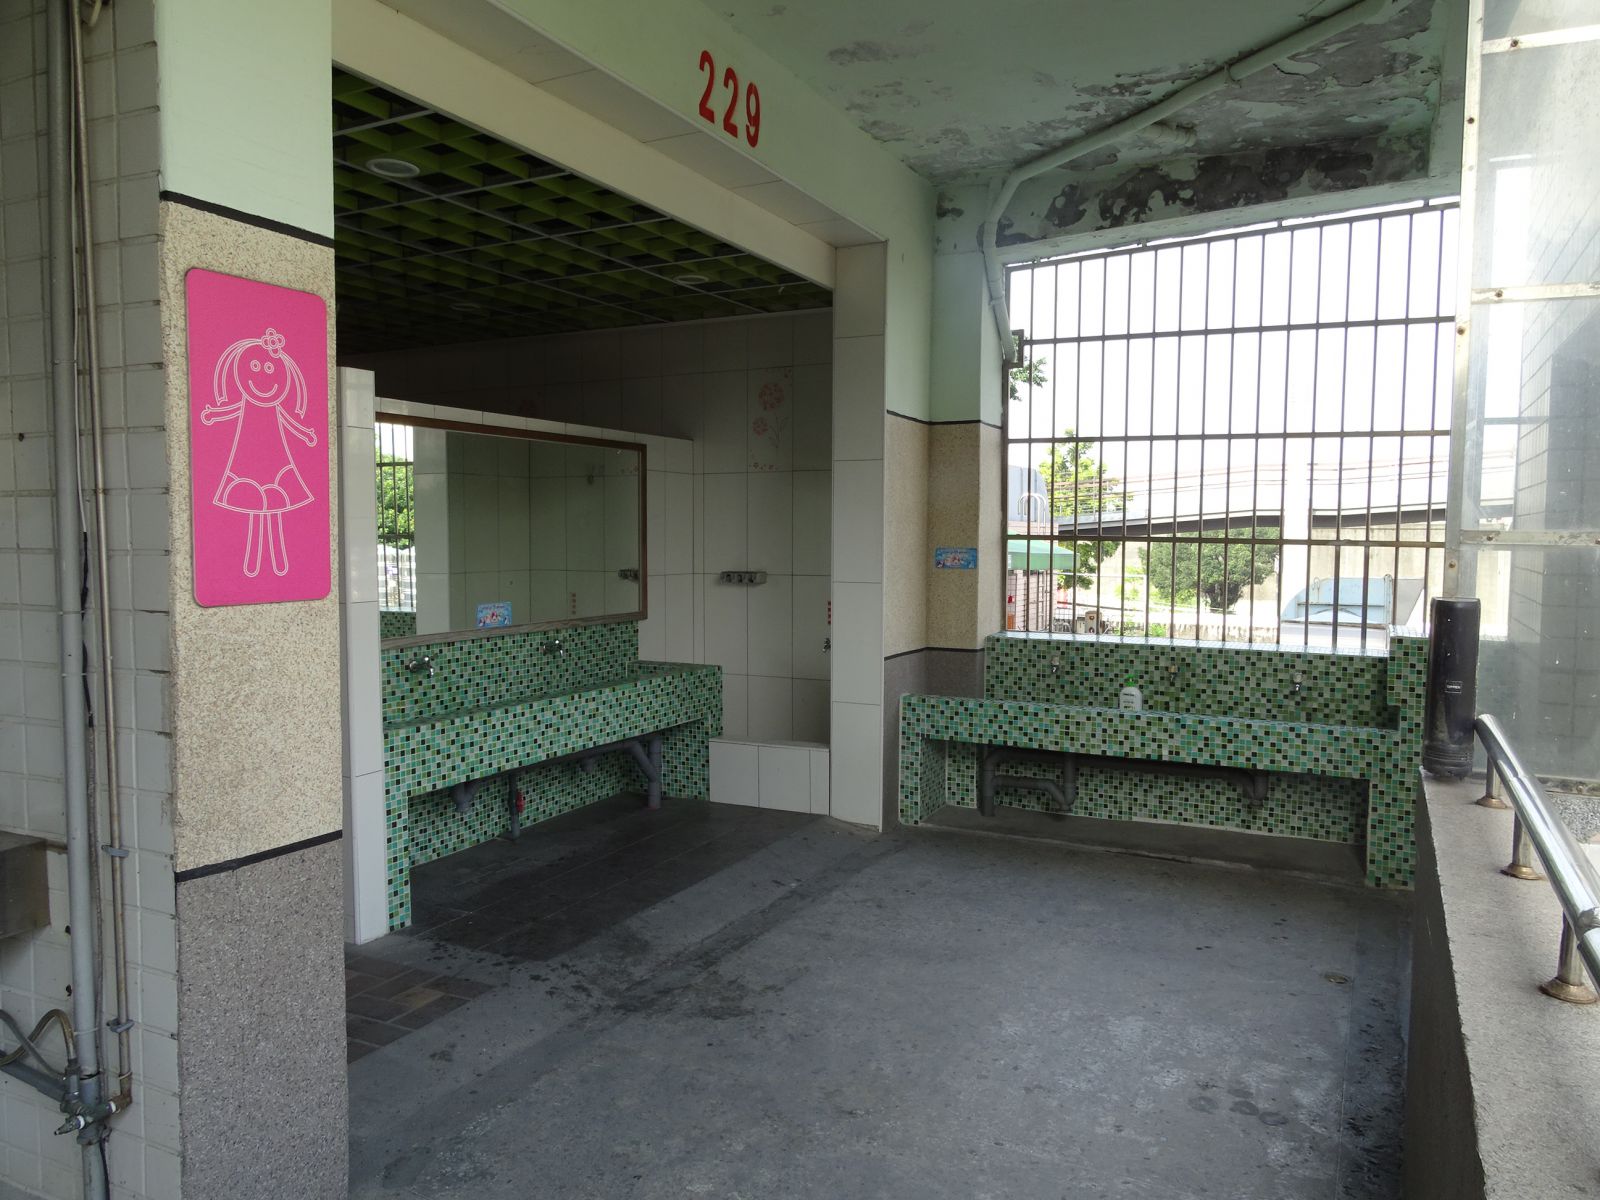 教室走廊兩端廁所皆配置有洗手台方便師生使用